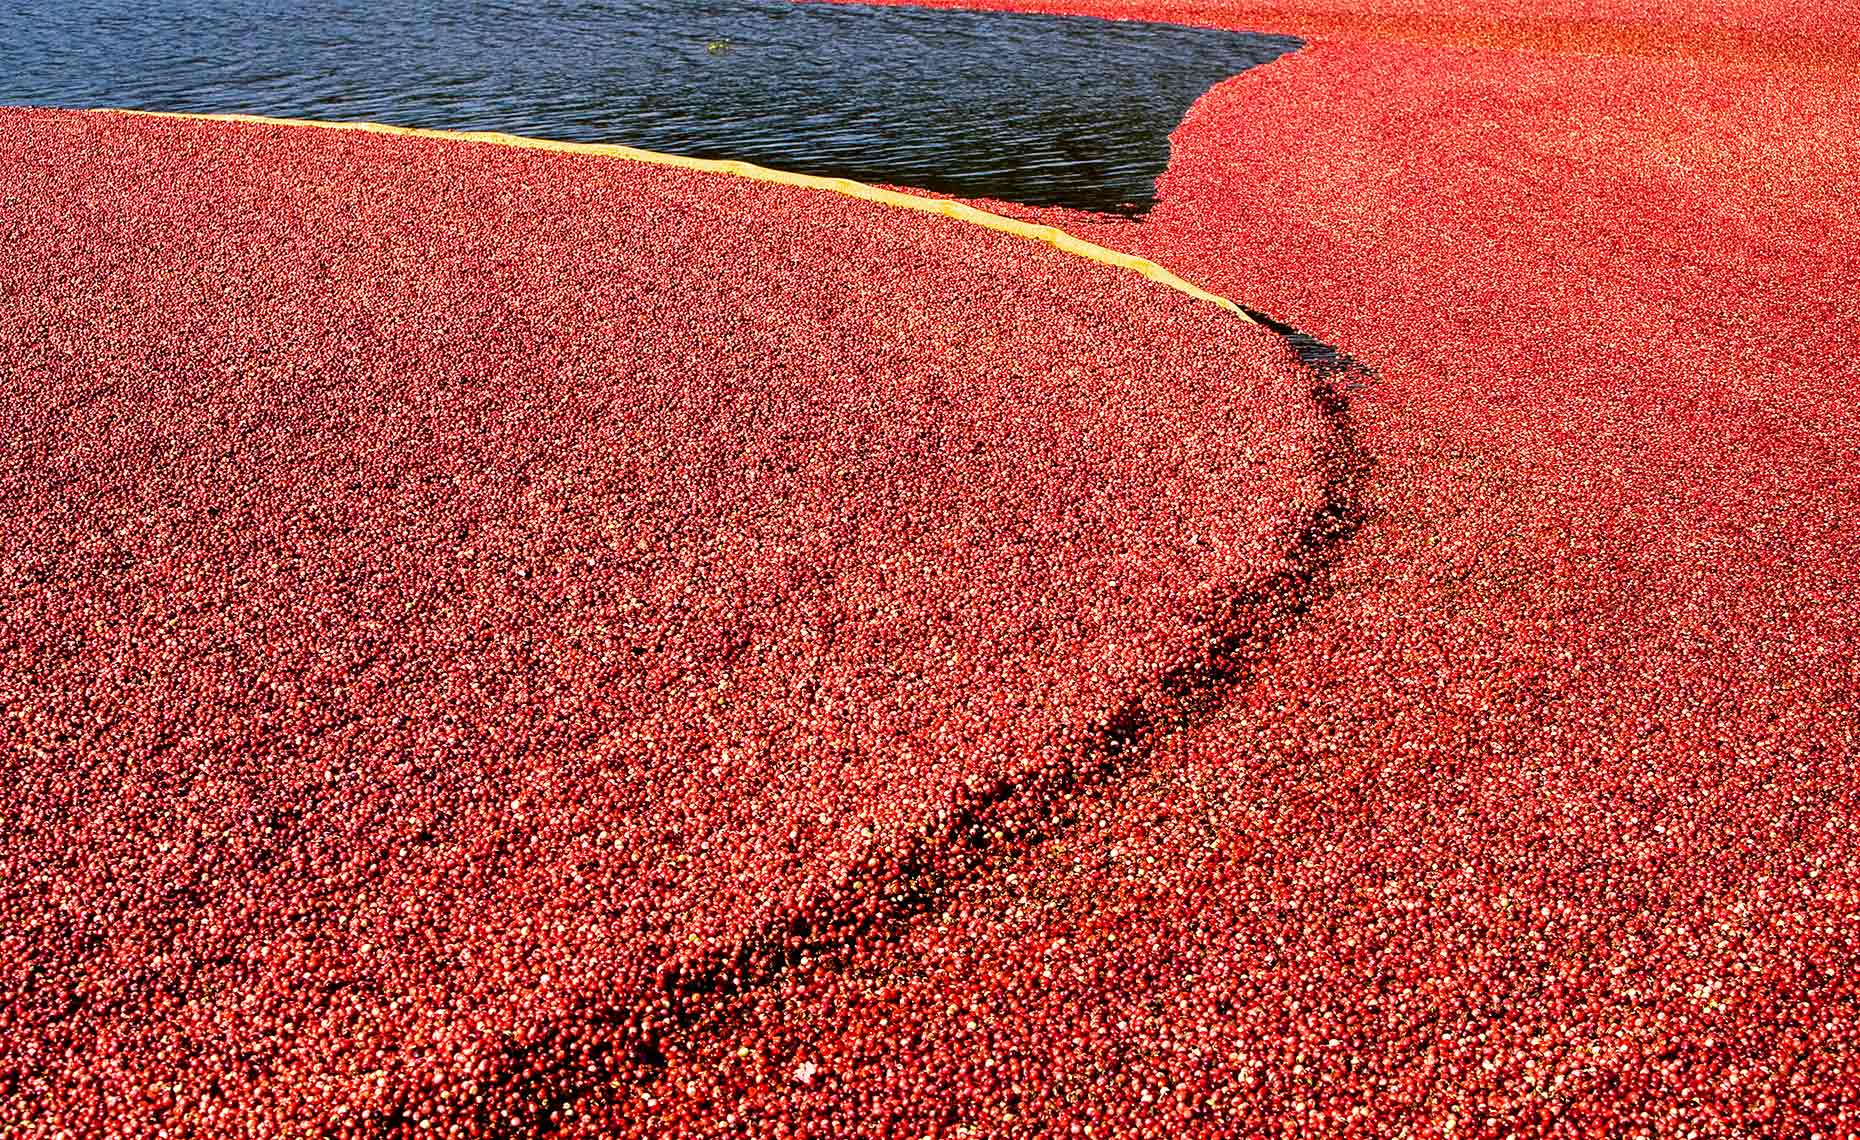 Harvesting at a cranberry bog